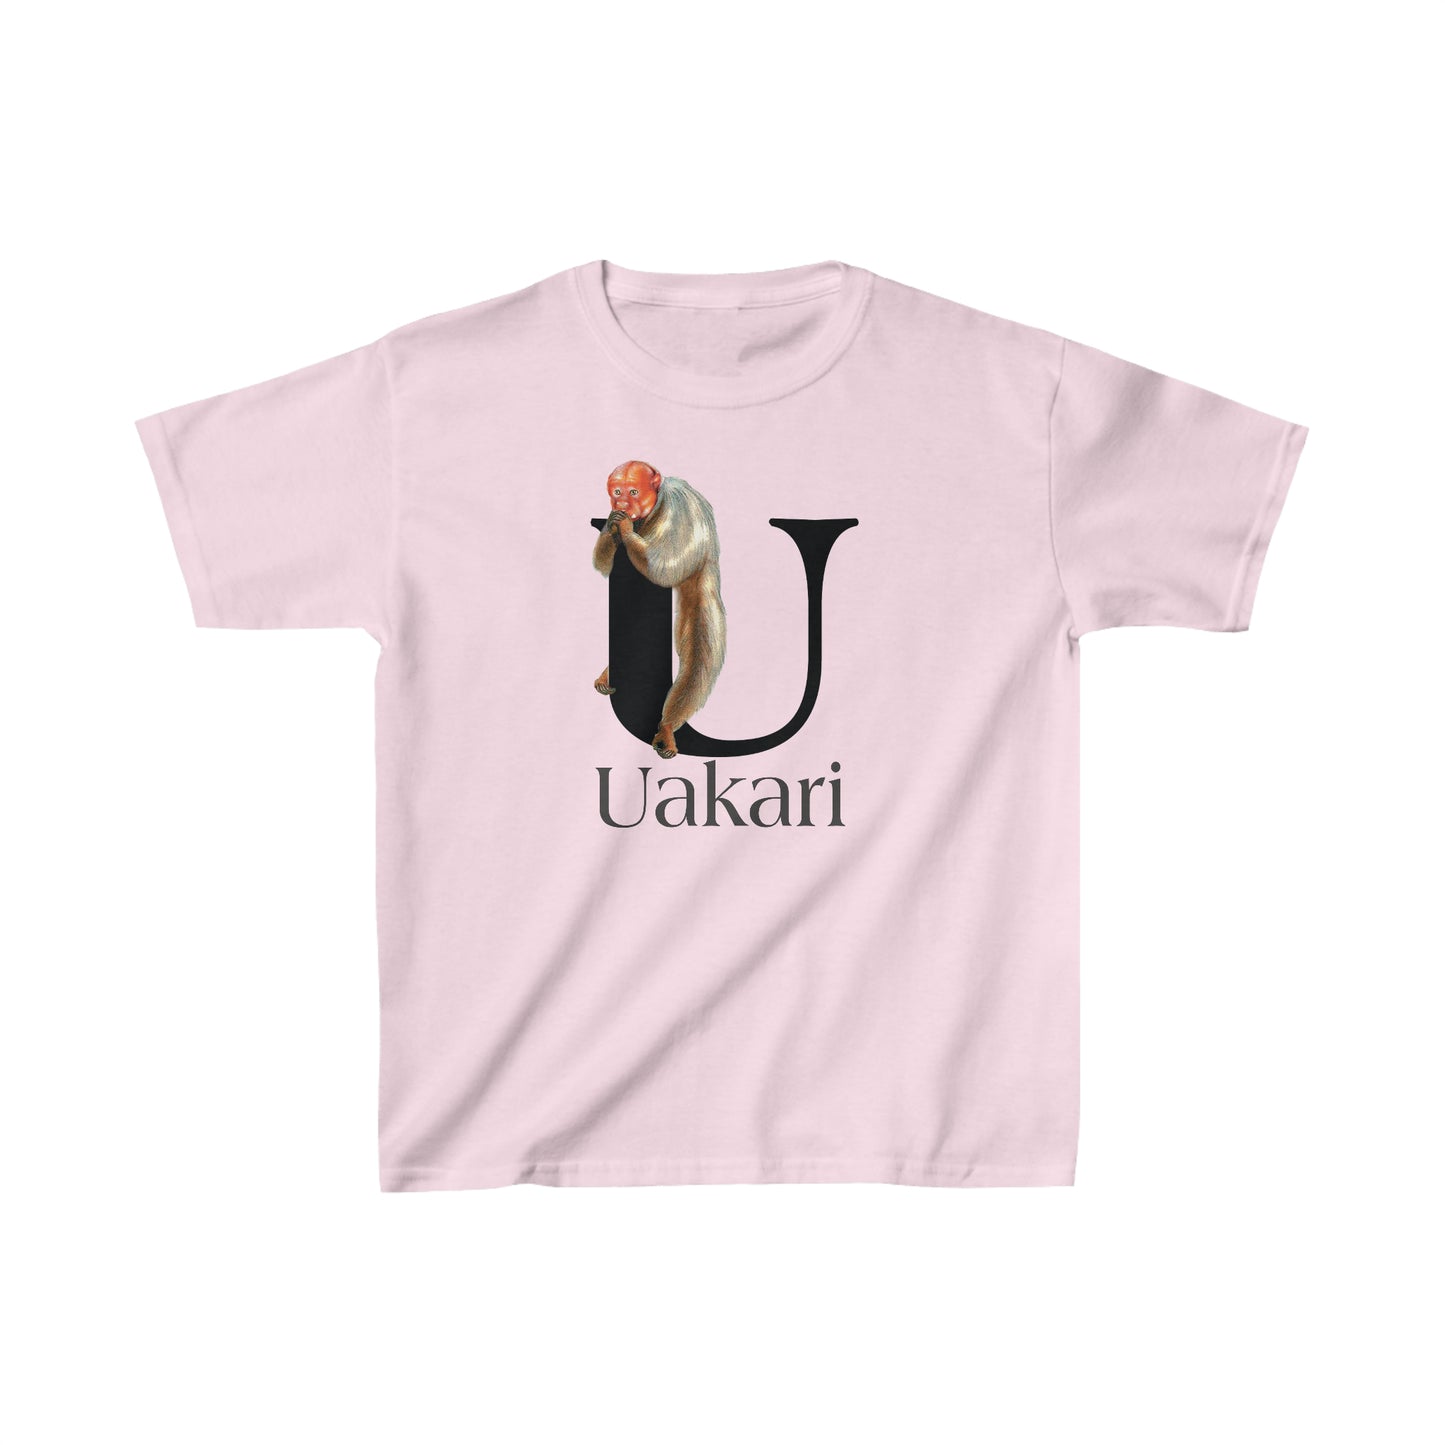 U is for Uakari Monkey, Uacari monkey Drawing, Uakari T-Shirt, animal t-shirt, animal alphabet letter U, Uakari illustration t shirt,